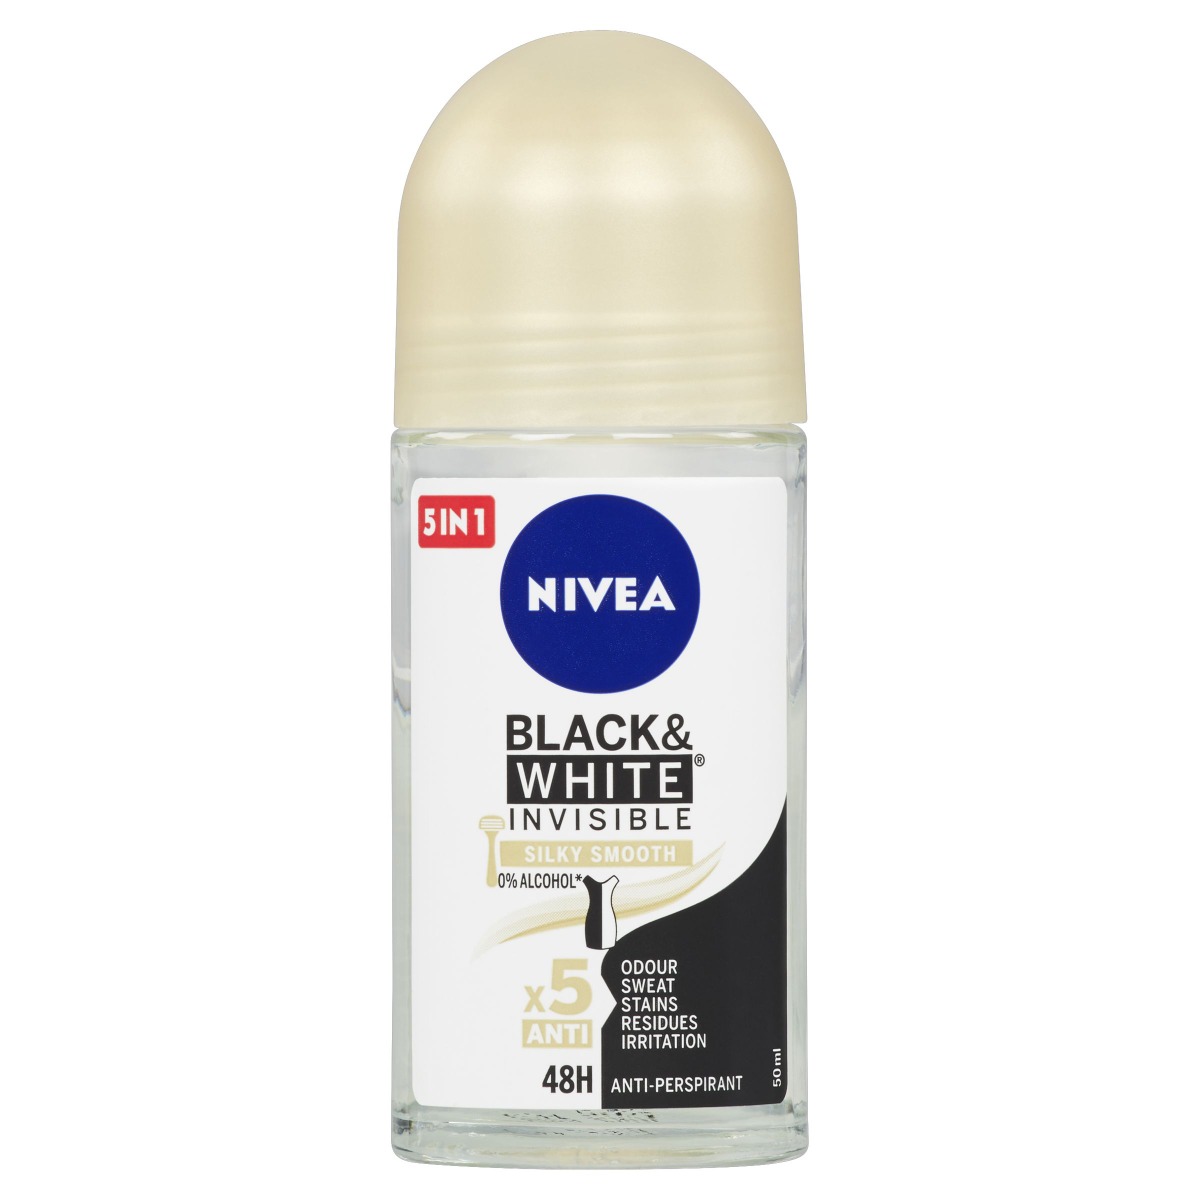 Nivea Black & White Invisible Silky Smooth kuličkový antiperspirant 50 ml Nivea